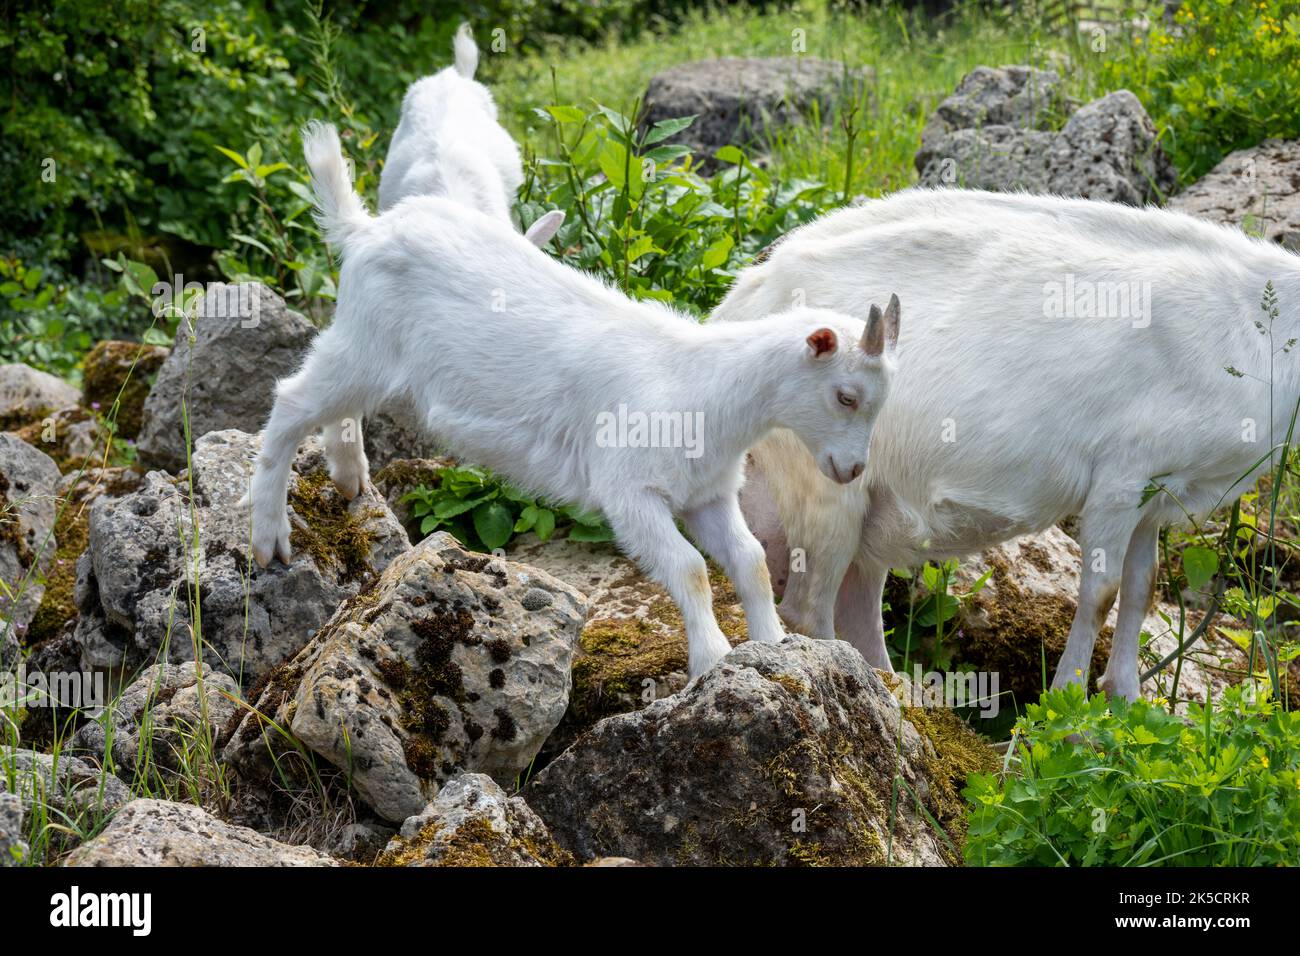 Goats (Capra), genus of horned goats (Bovidae). Stock Photo